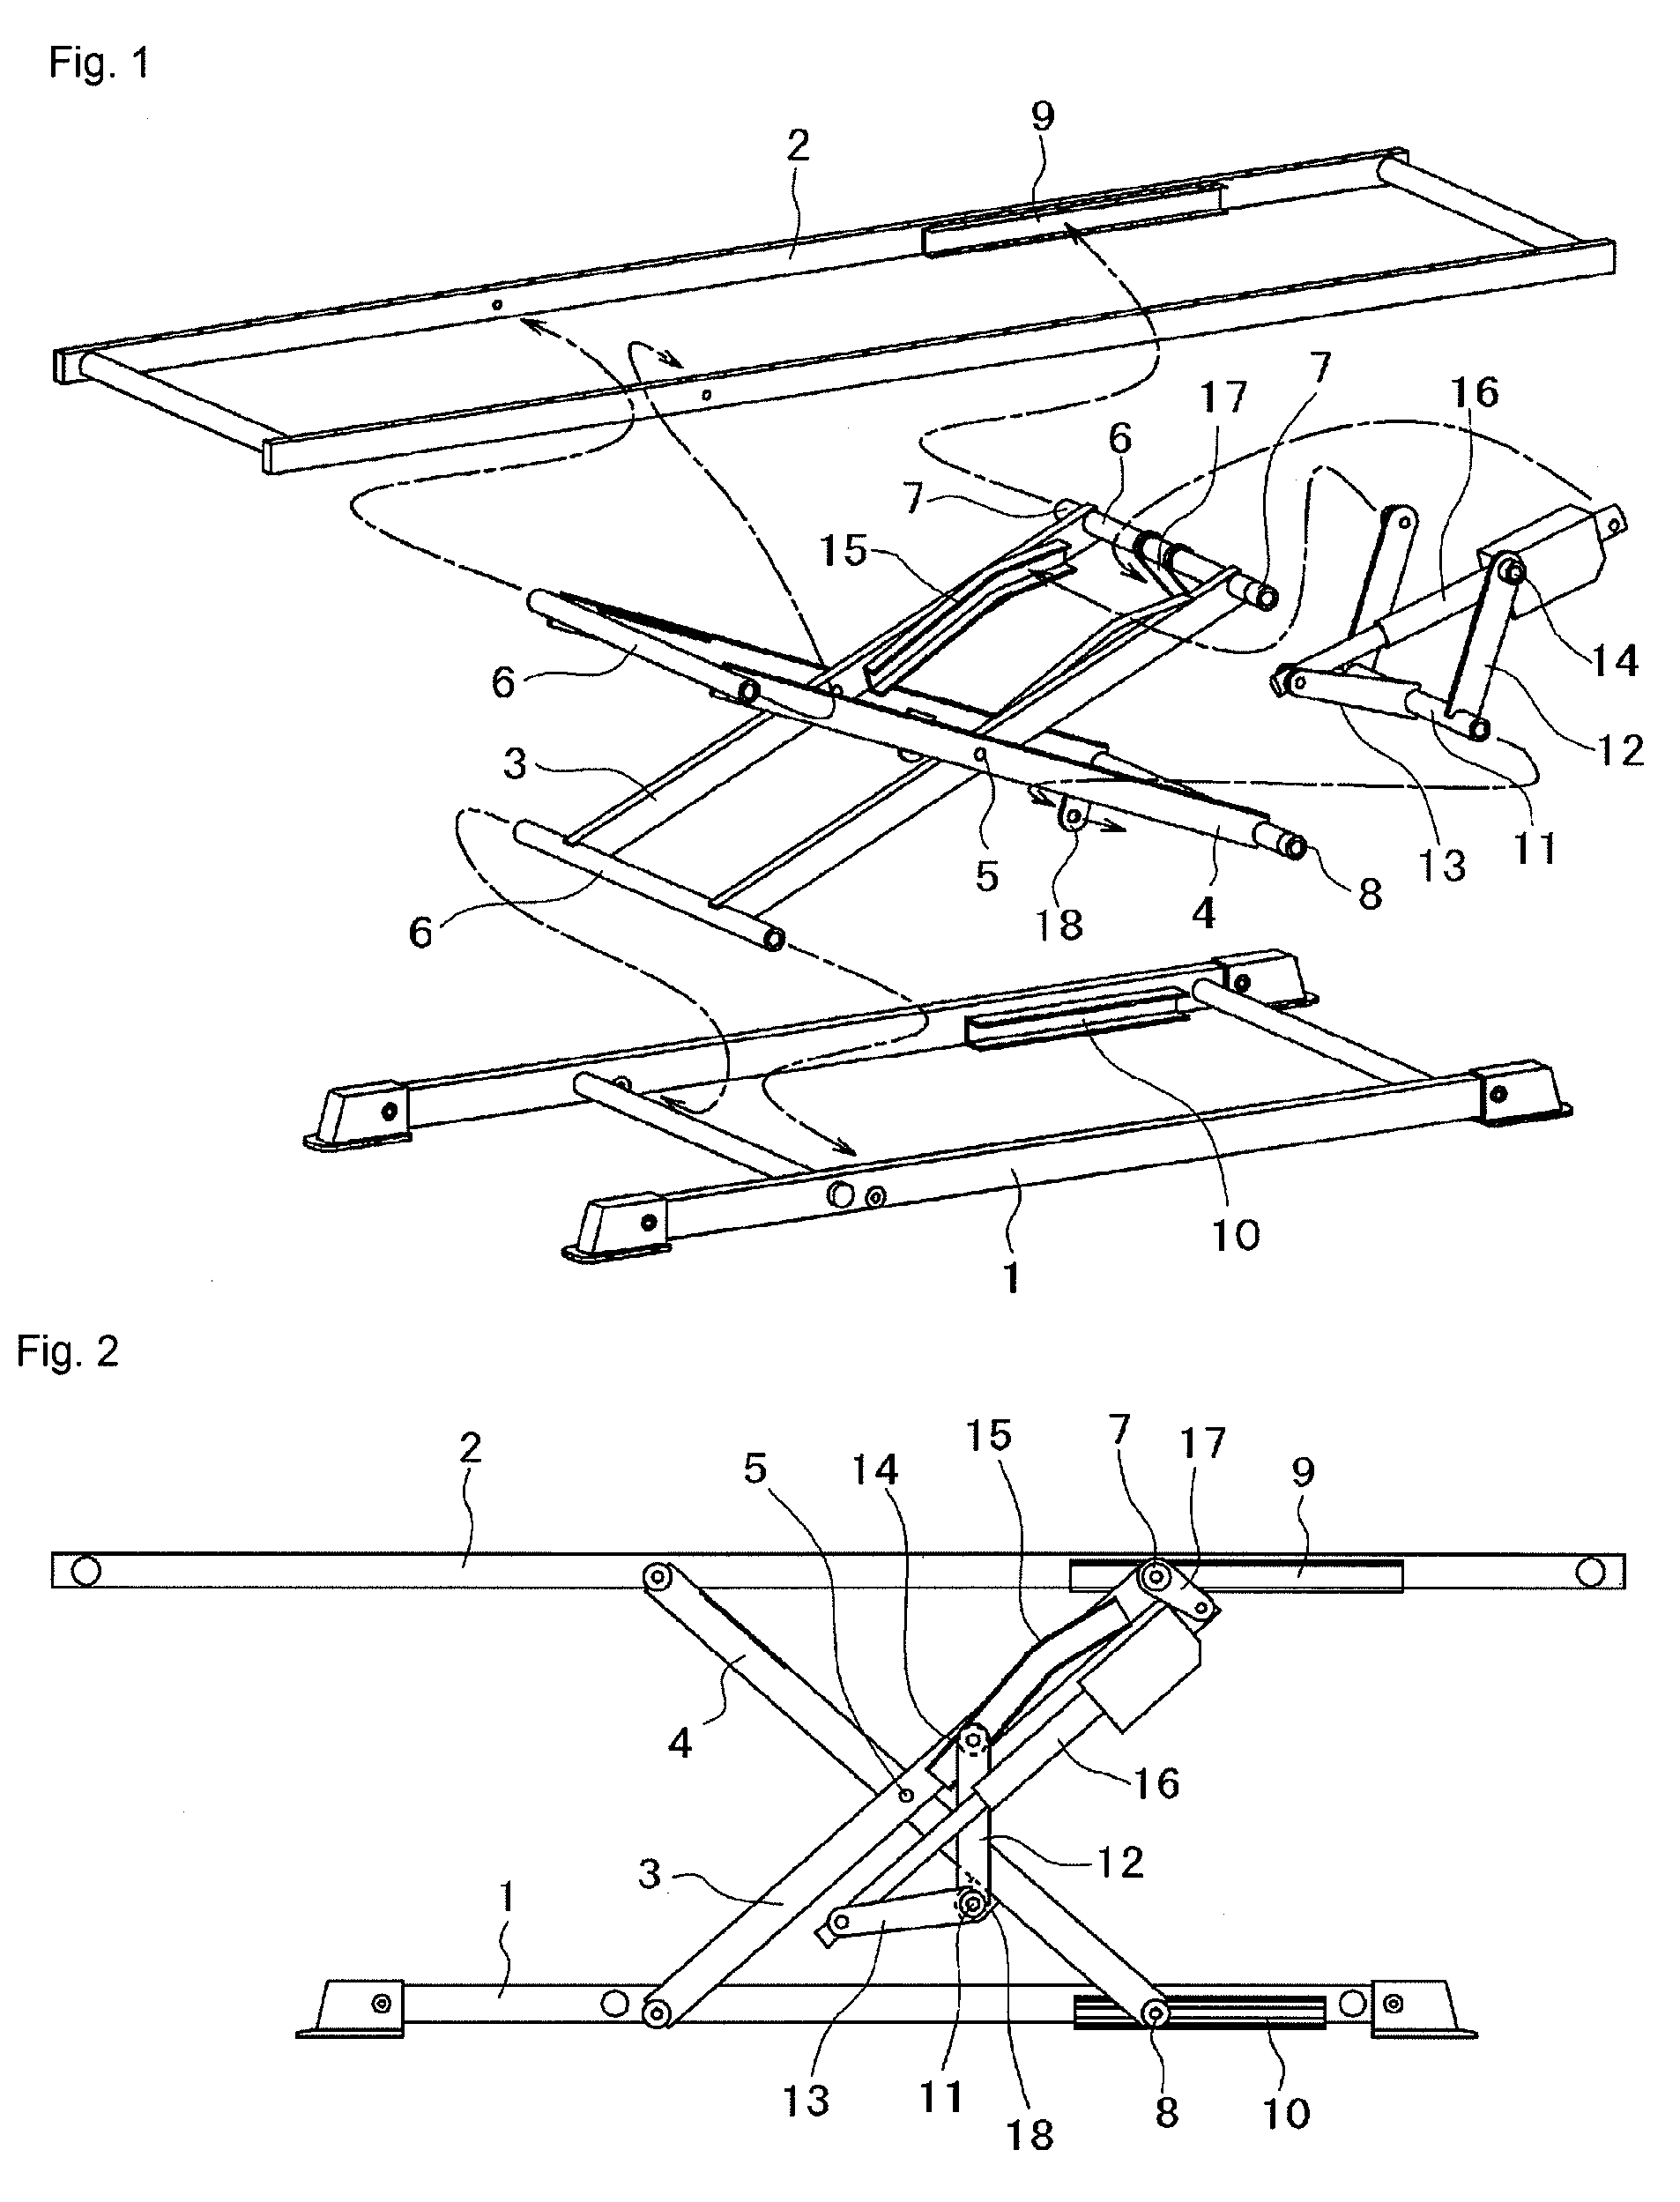 X-linked lift mechanism